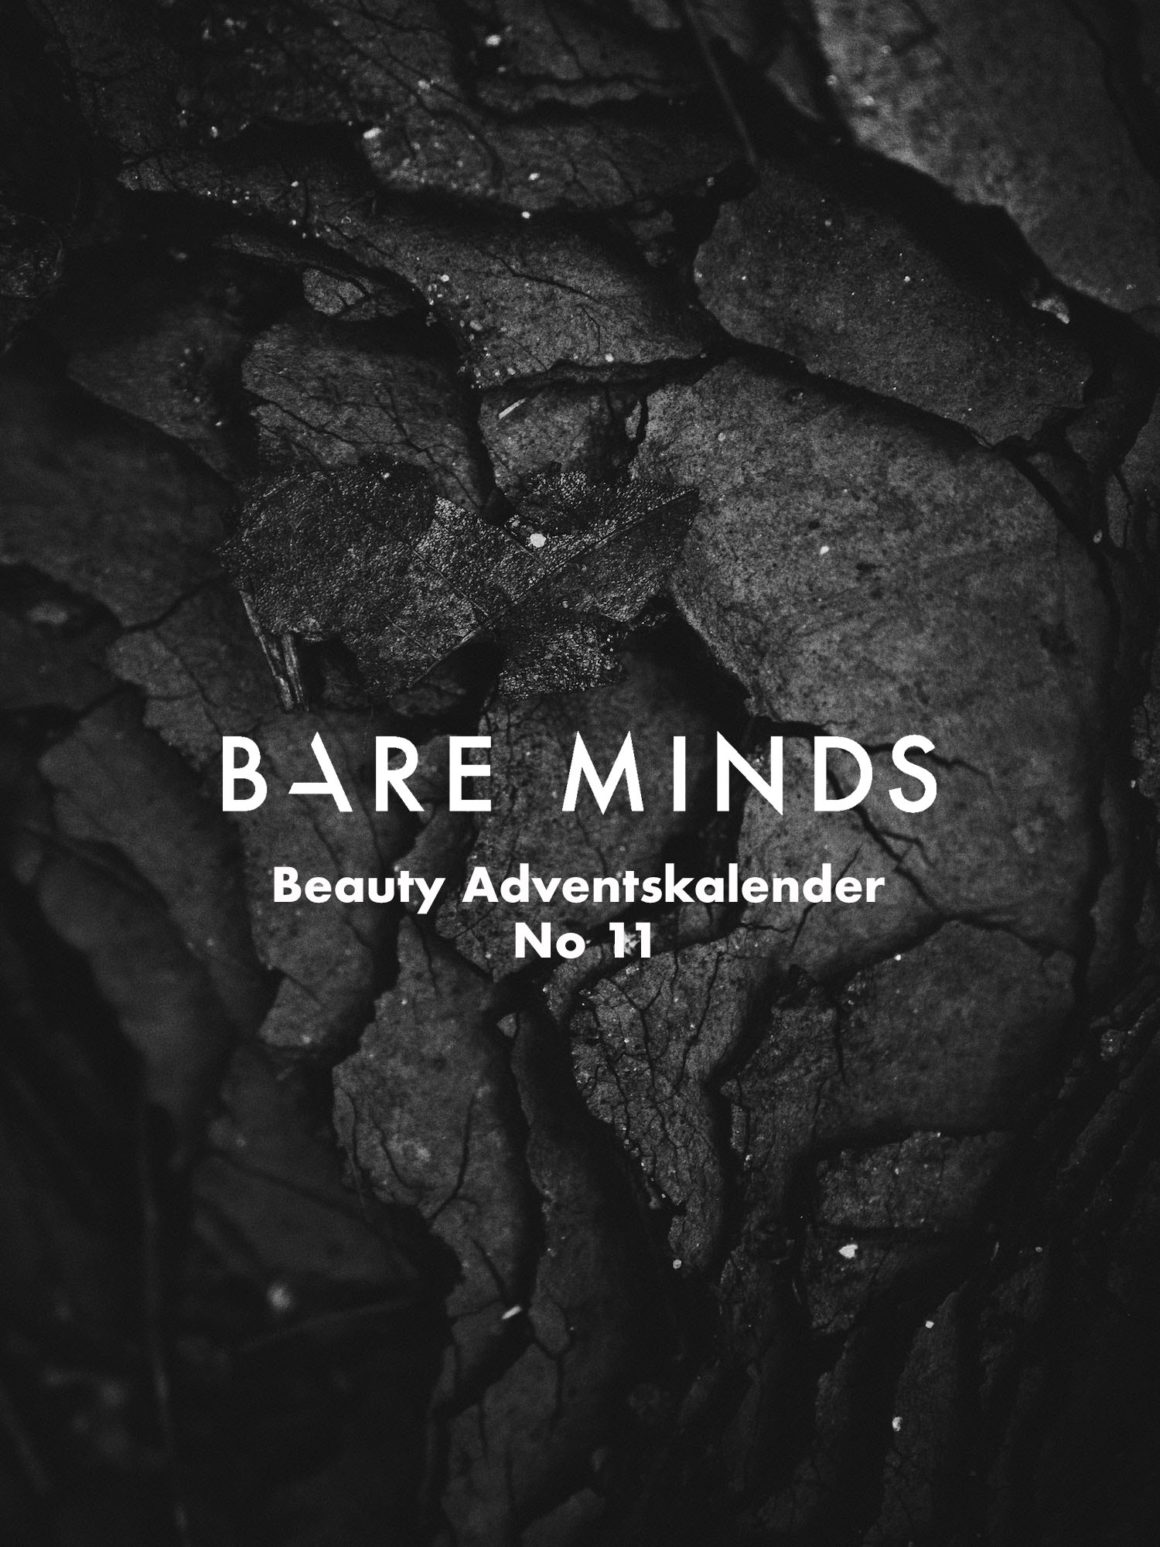 Bare Minds Beauty Adventskalender brian-patrick-tagalog-676639-unsplash